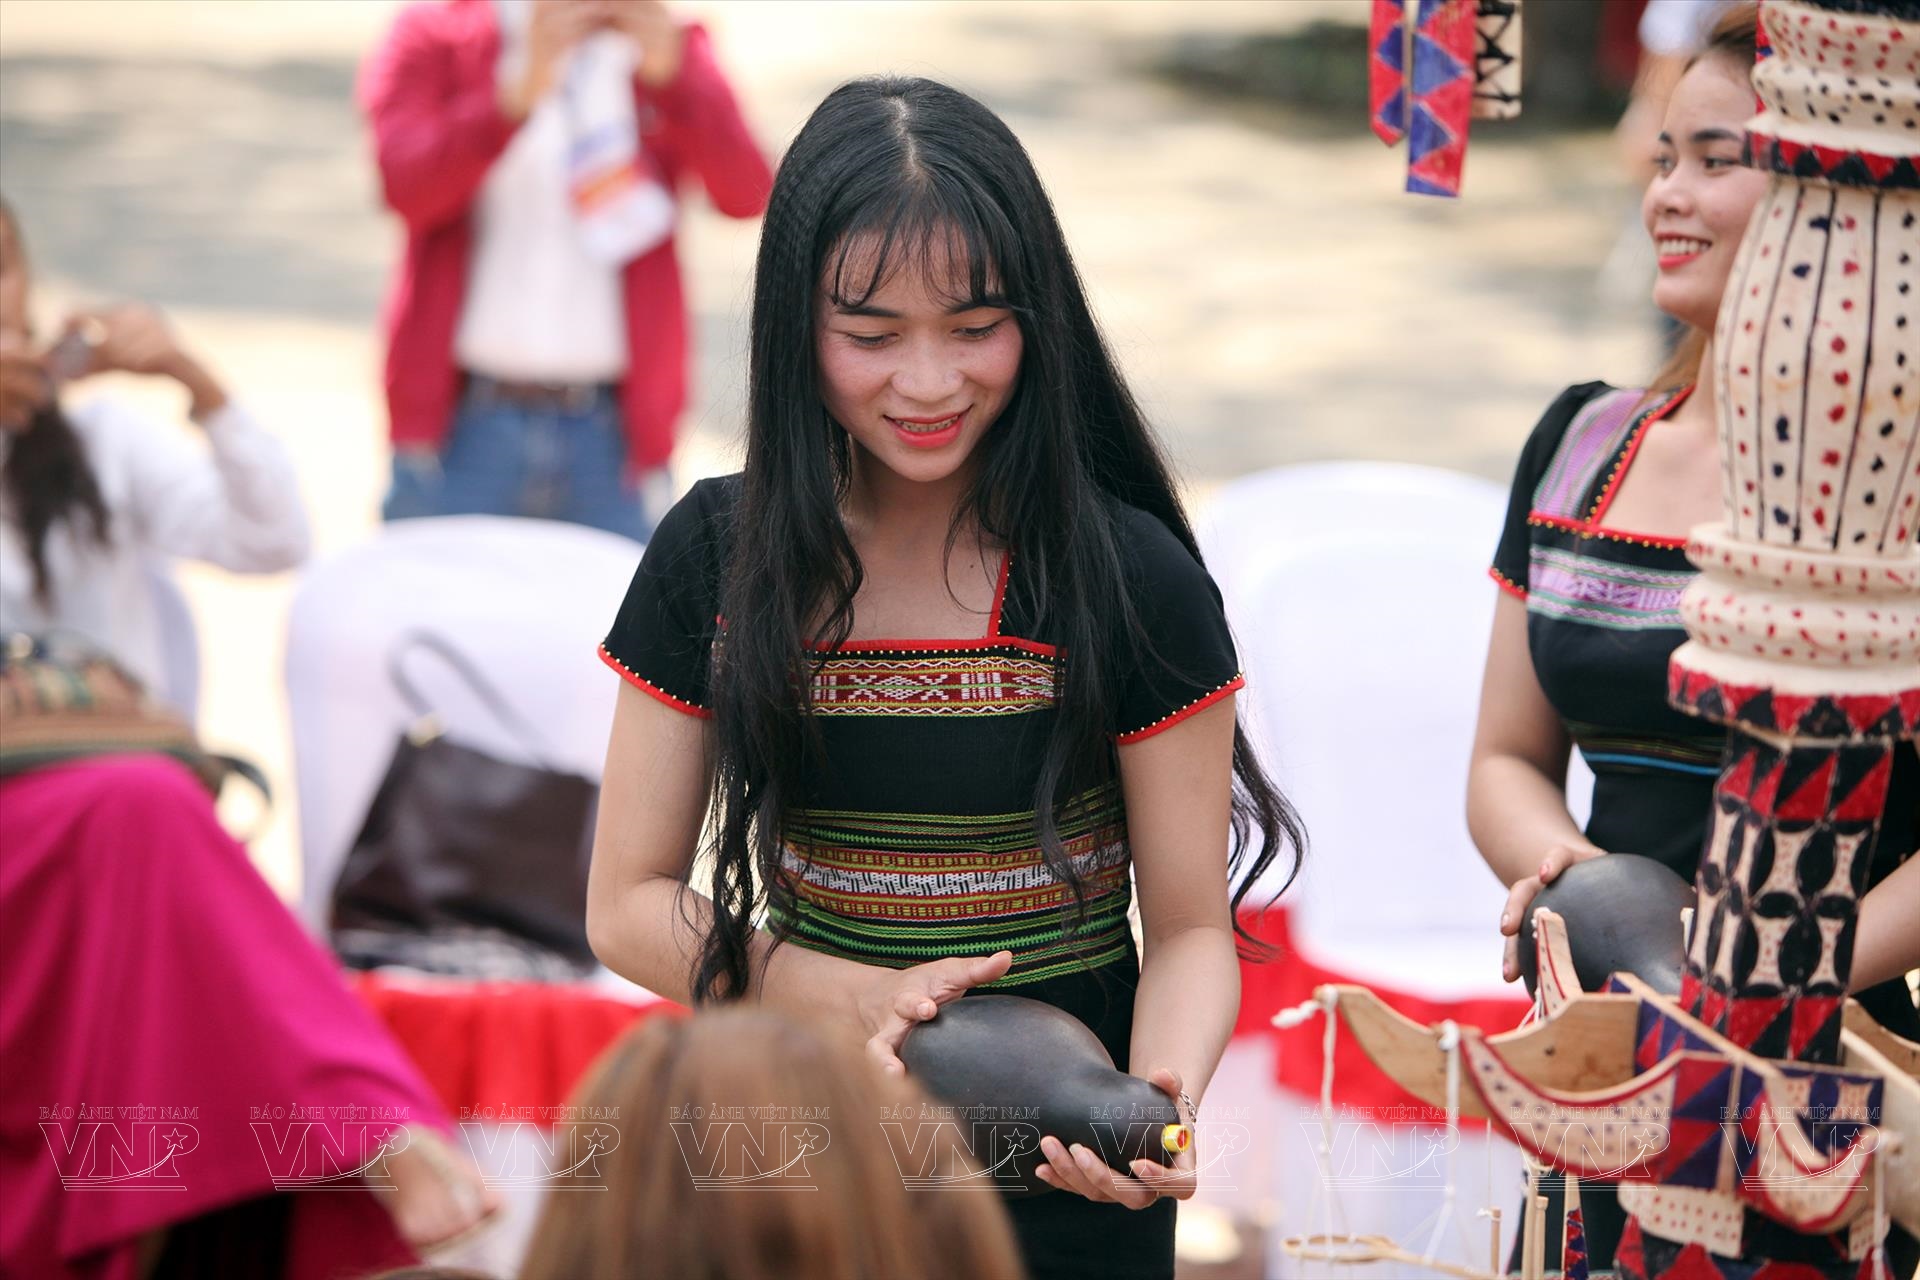 Trang phục truyền thống của người Việt Nam có nét đẹp thanh lịch, tinh tế và trang nhã, không chỉ đơn giản là một bộ trang phục mà còn là phản ánh nền văn hoá truyền thống của dân tộc. Bộ ảnh trang phục truyền thống sẽ giúp bạn hiểu thêm về văn hoá và đặc trưng của người Việt Nam.